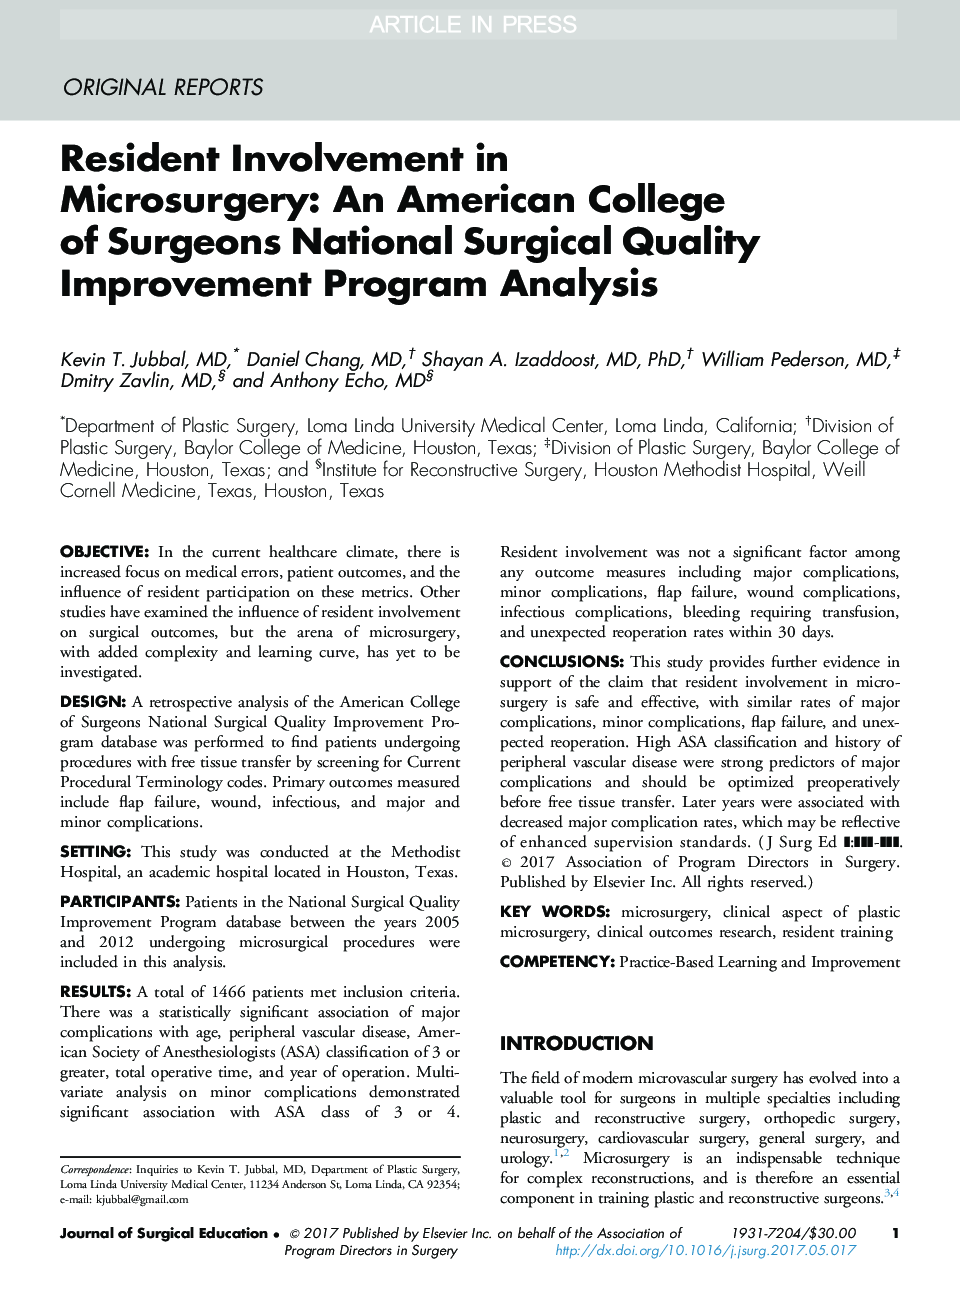 مشارکت ساکنین در میکروسکوپیک: کالج جراحان آمریکایی تجزیه و تحلیل برنامه بهبود کیفیت جراحی ملی 